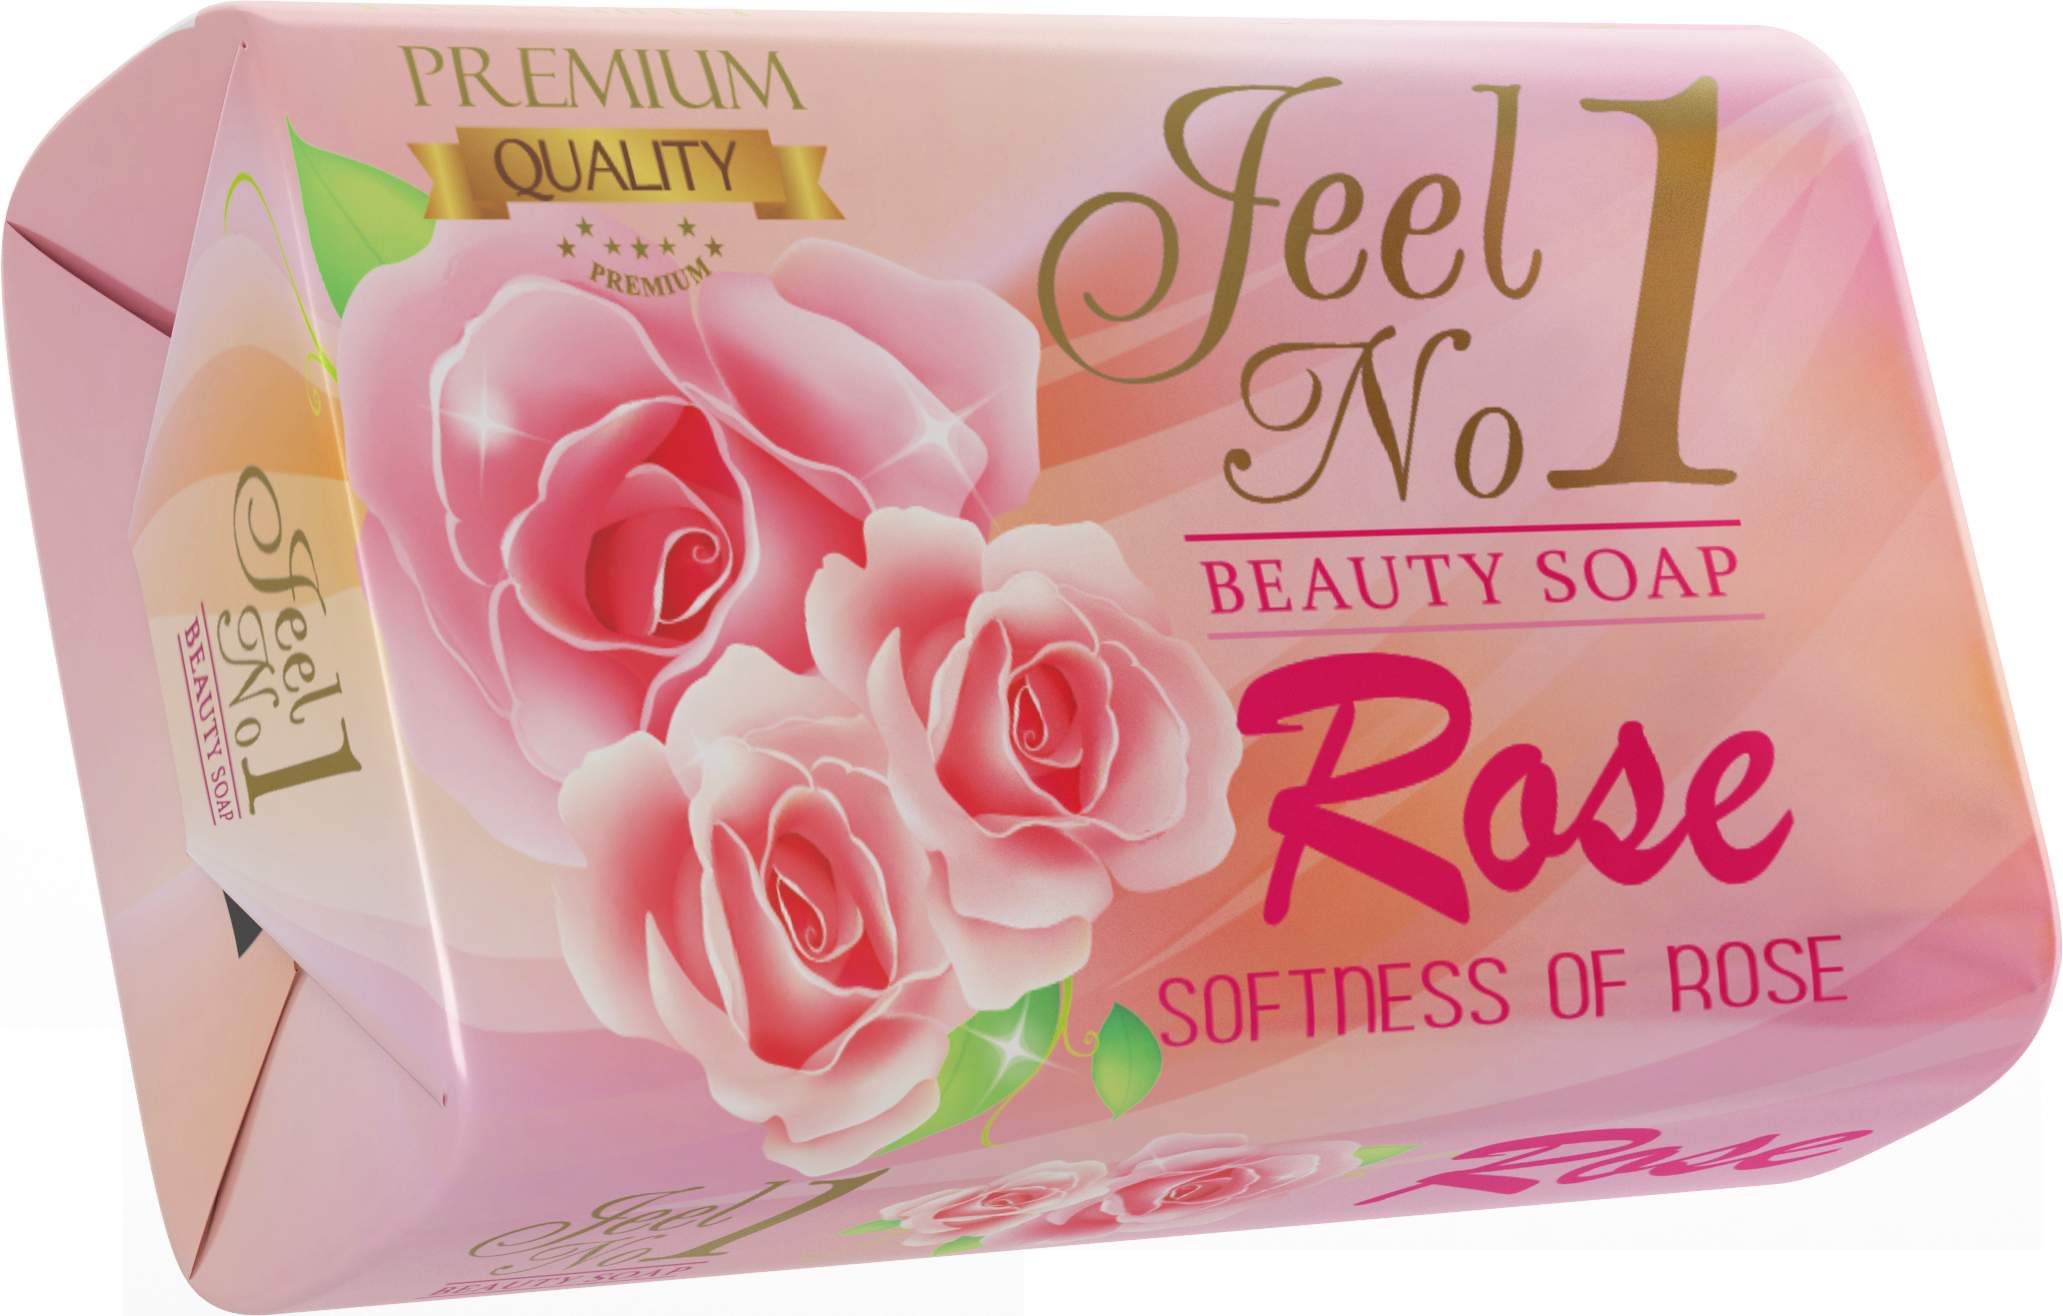 Jeel N0.1 Rose Beauty Soap